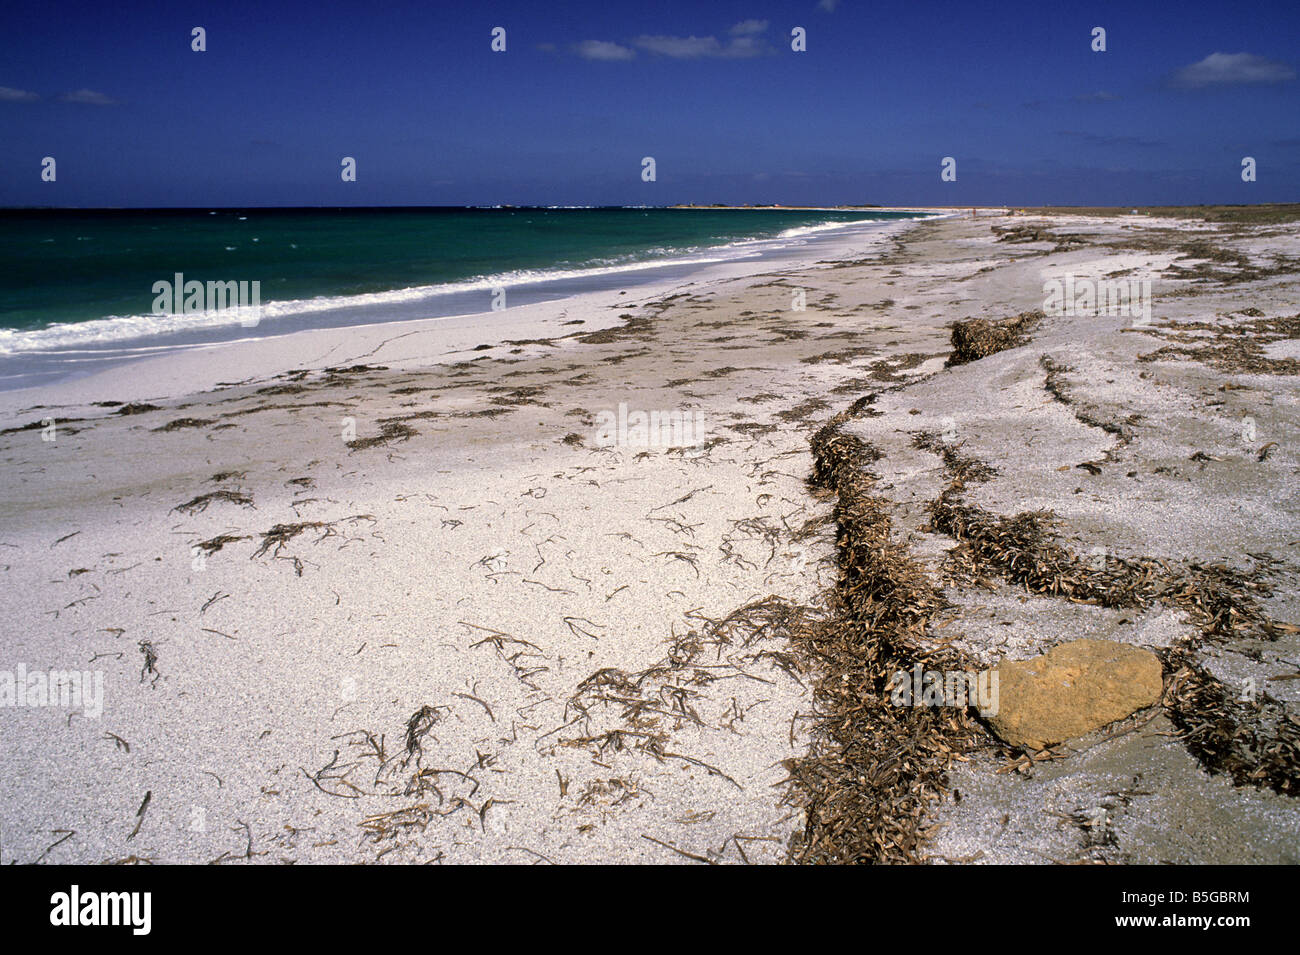 Is Arutas spiaggia, della penisola del Sinis, Sardegna, Italia Foto Stock